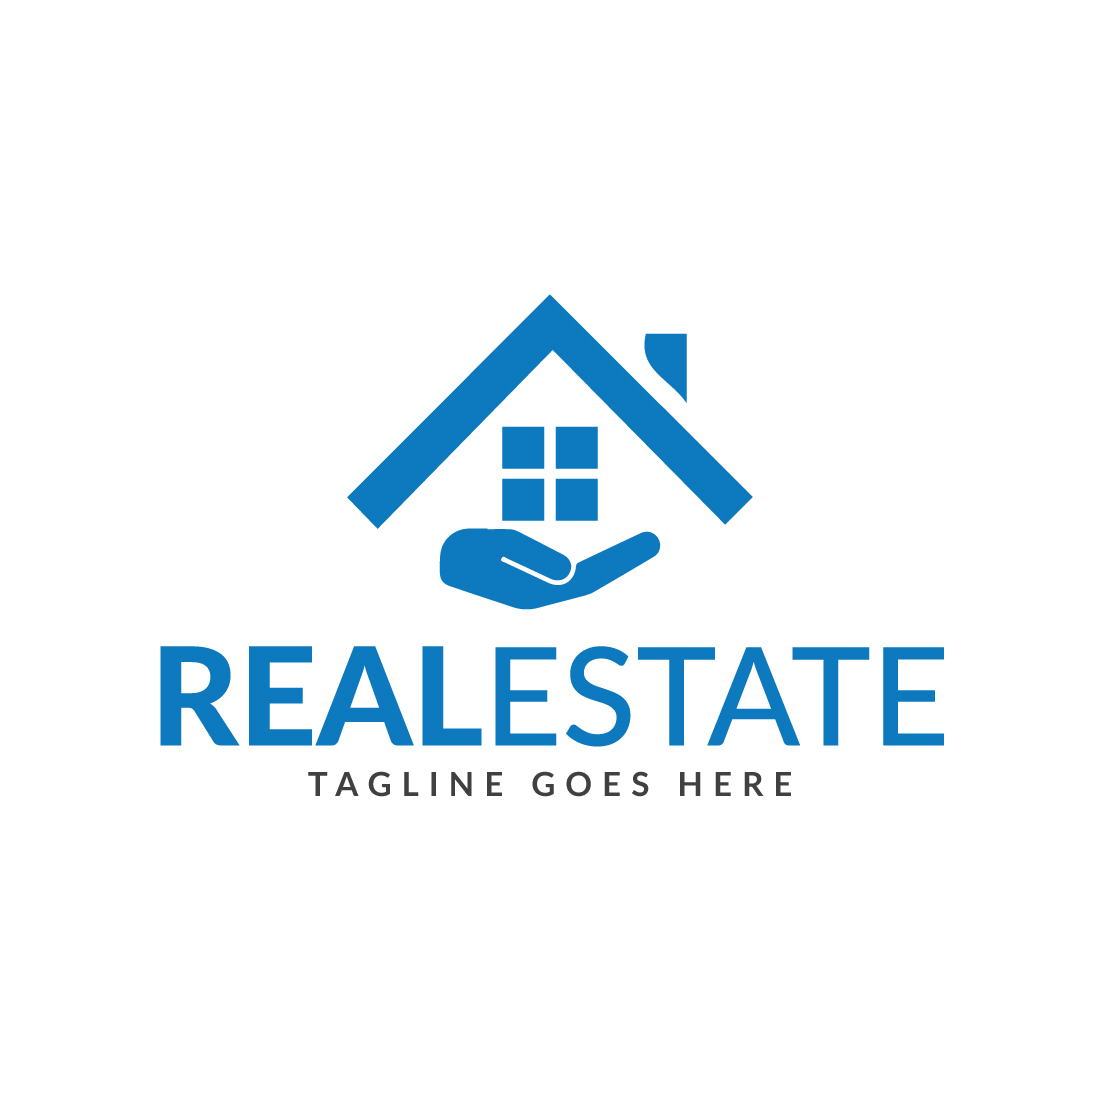 Real Estate logo design, Property Logo Design cover image.